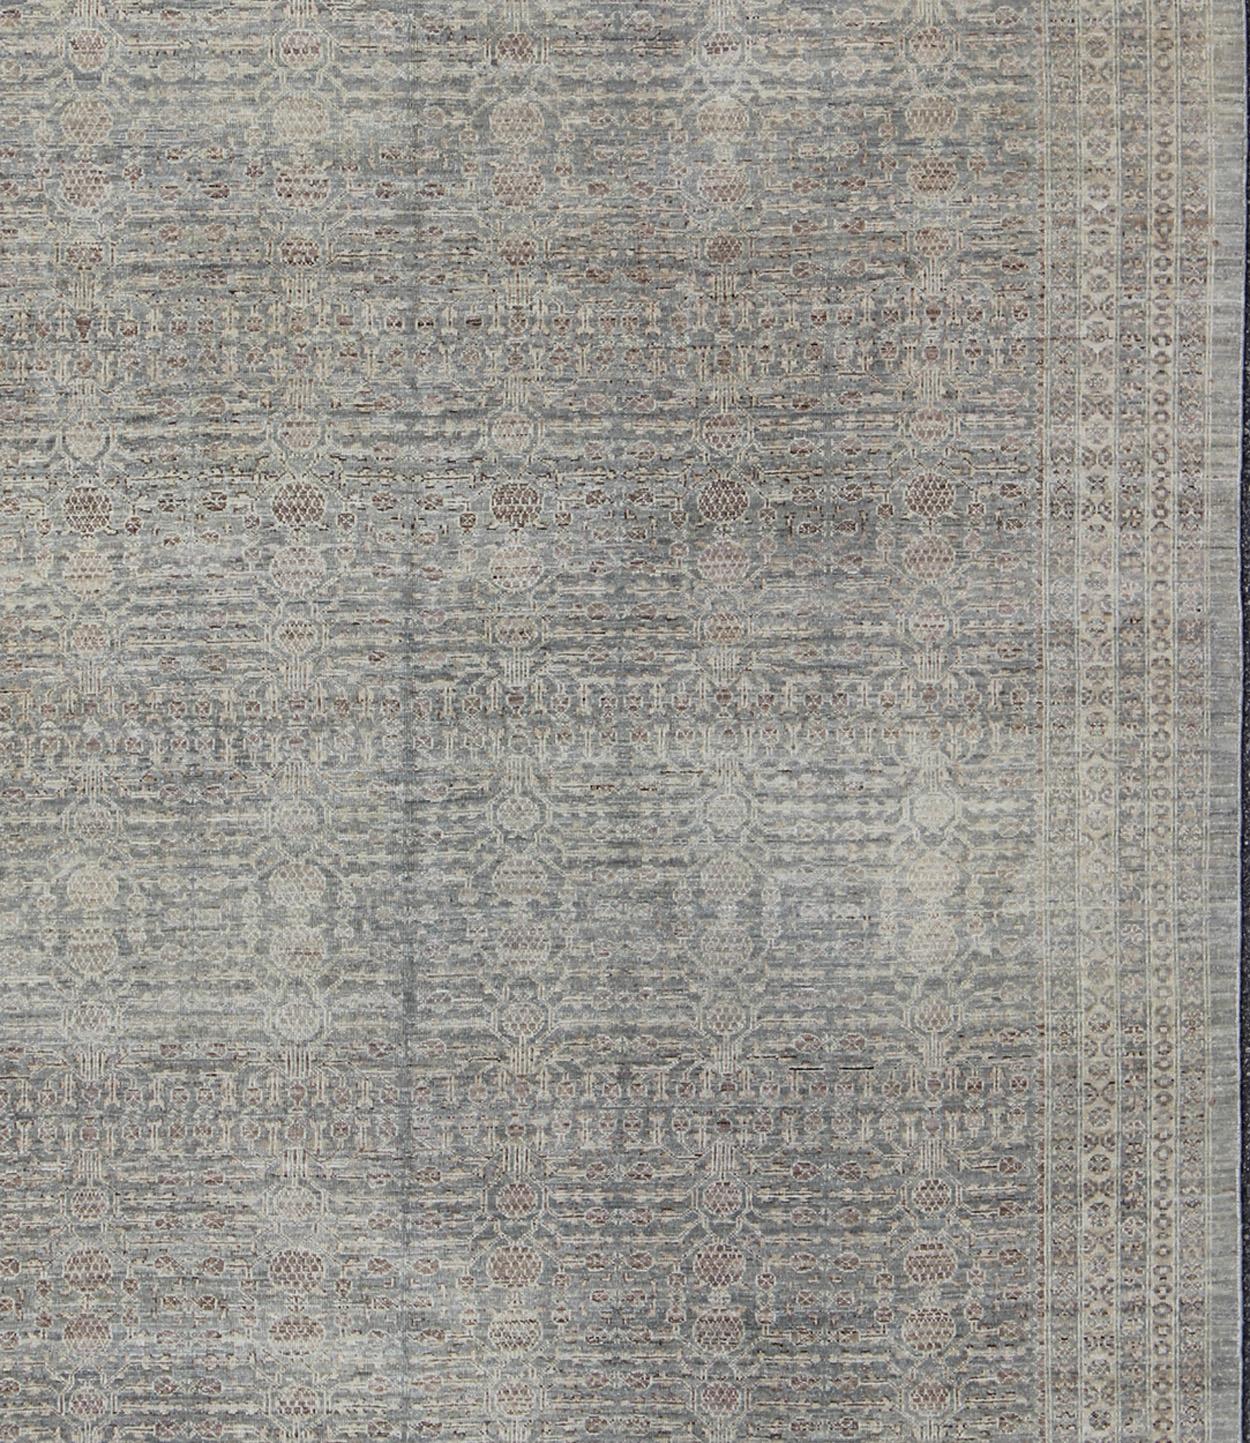 Khotan-Teppich im Granatapfeldesign von Keivan Woven Arts  Teppich KOL-69236 Herkunftsland / Typ: Afghanistan / Khotan. 
Maße: 7'11 x 9'8
Dieser Khotan im Übergangsstil zeichnet sich durch ein All-Over-Granatapfelmuster aus, das von einem sich